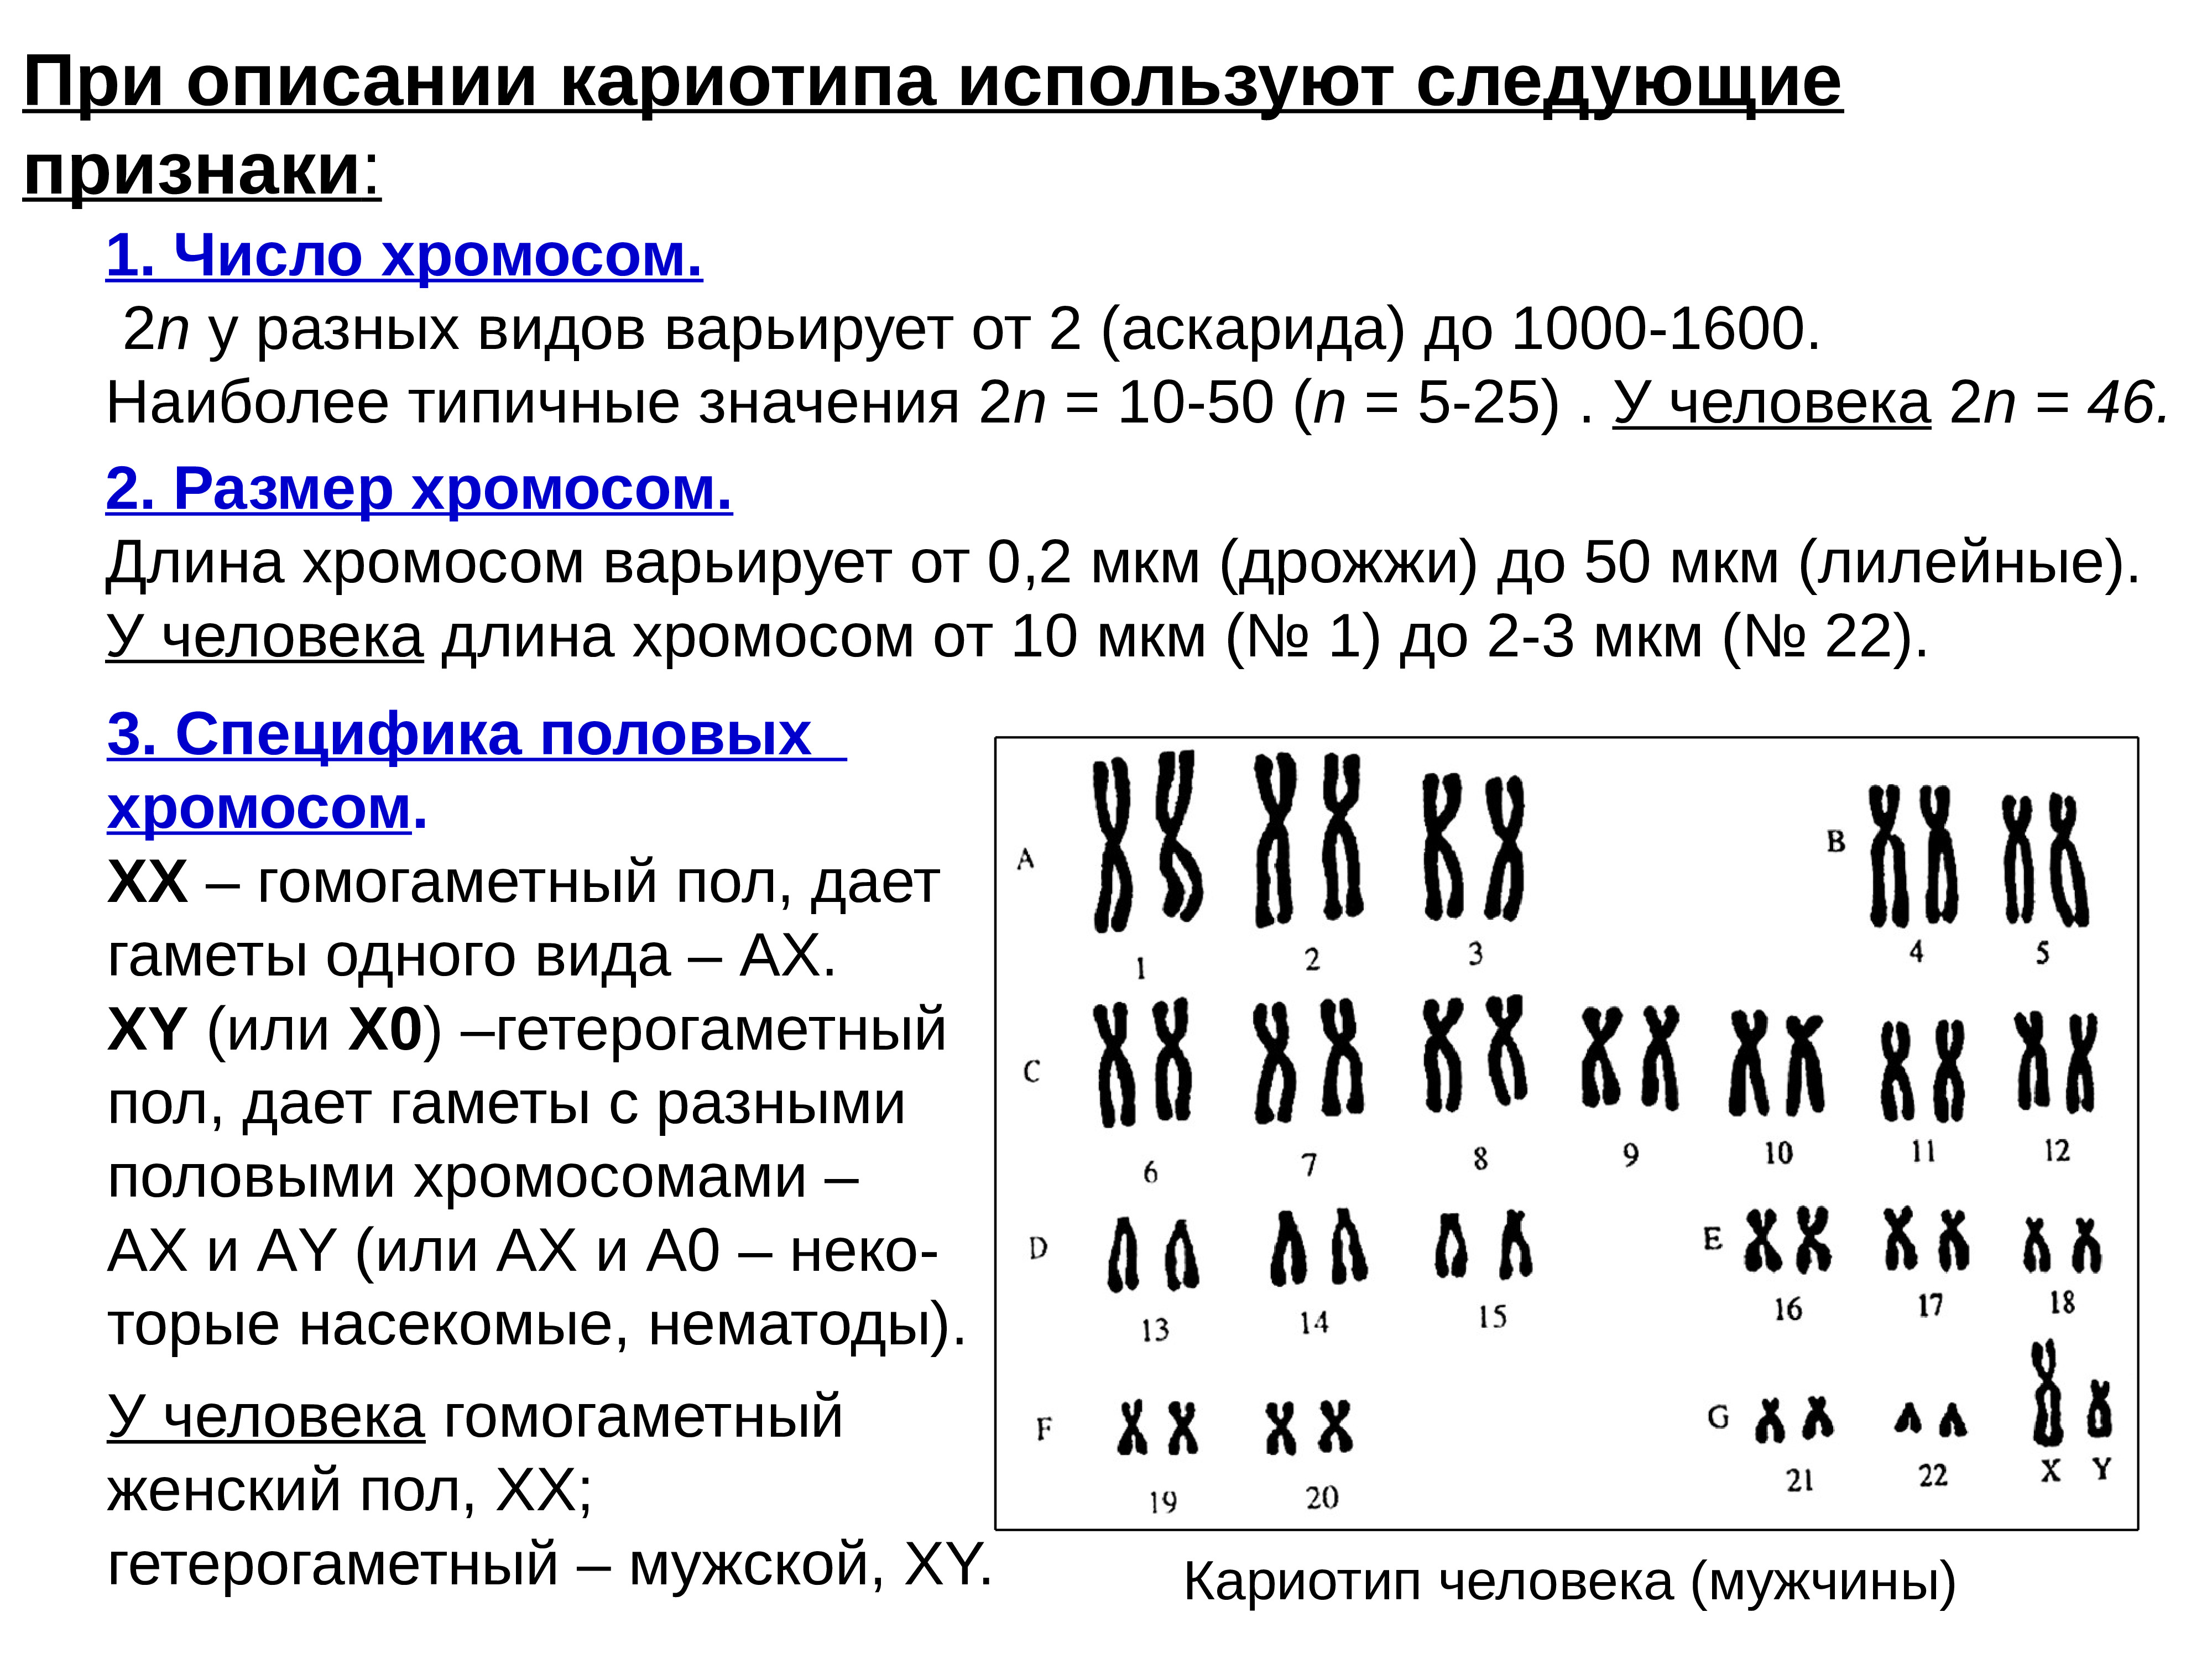 23 хромосомы у человека в клетках. Формула кариотипа человека в норме. Характеристика кариотипа человека в норме. Кариотип таблица хромосом. Хромосомные формулы кариотипа.